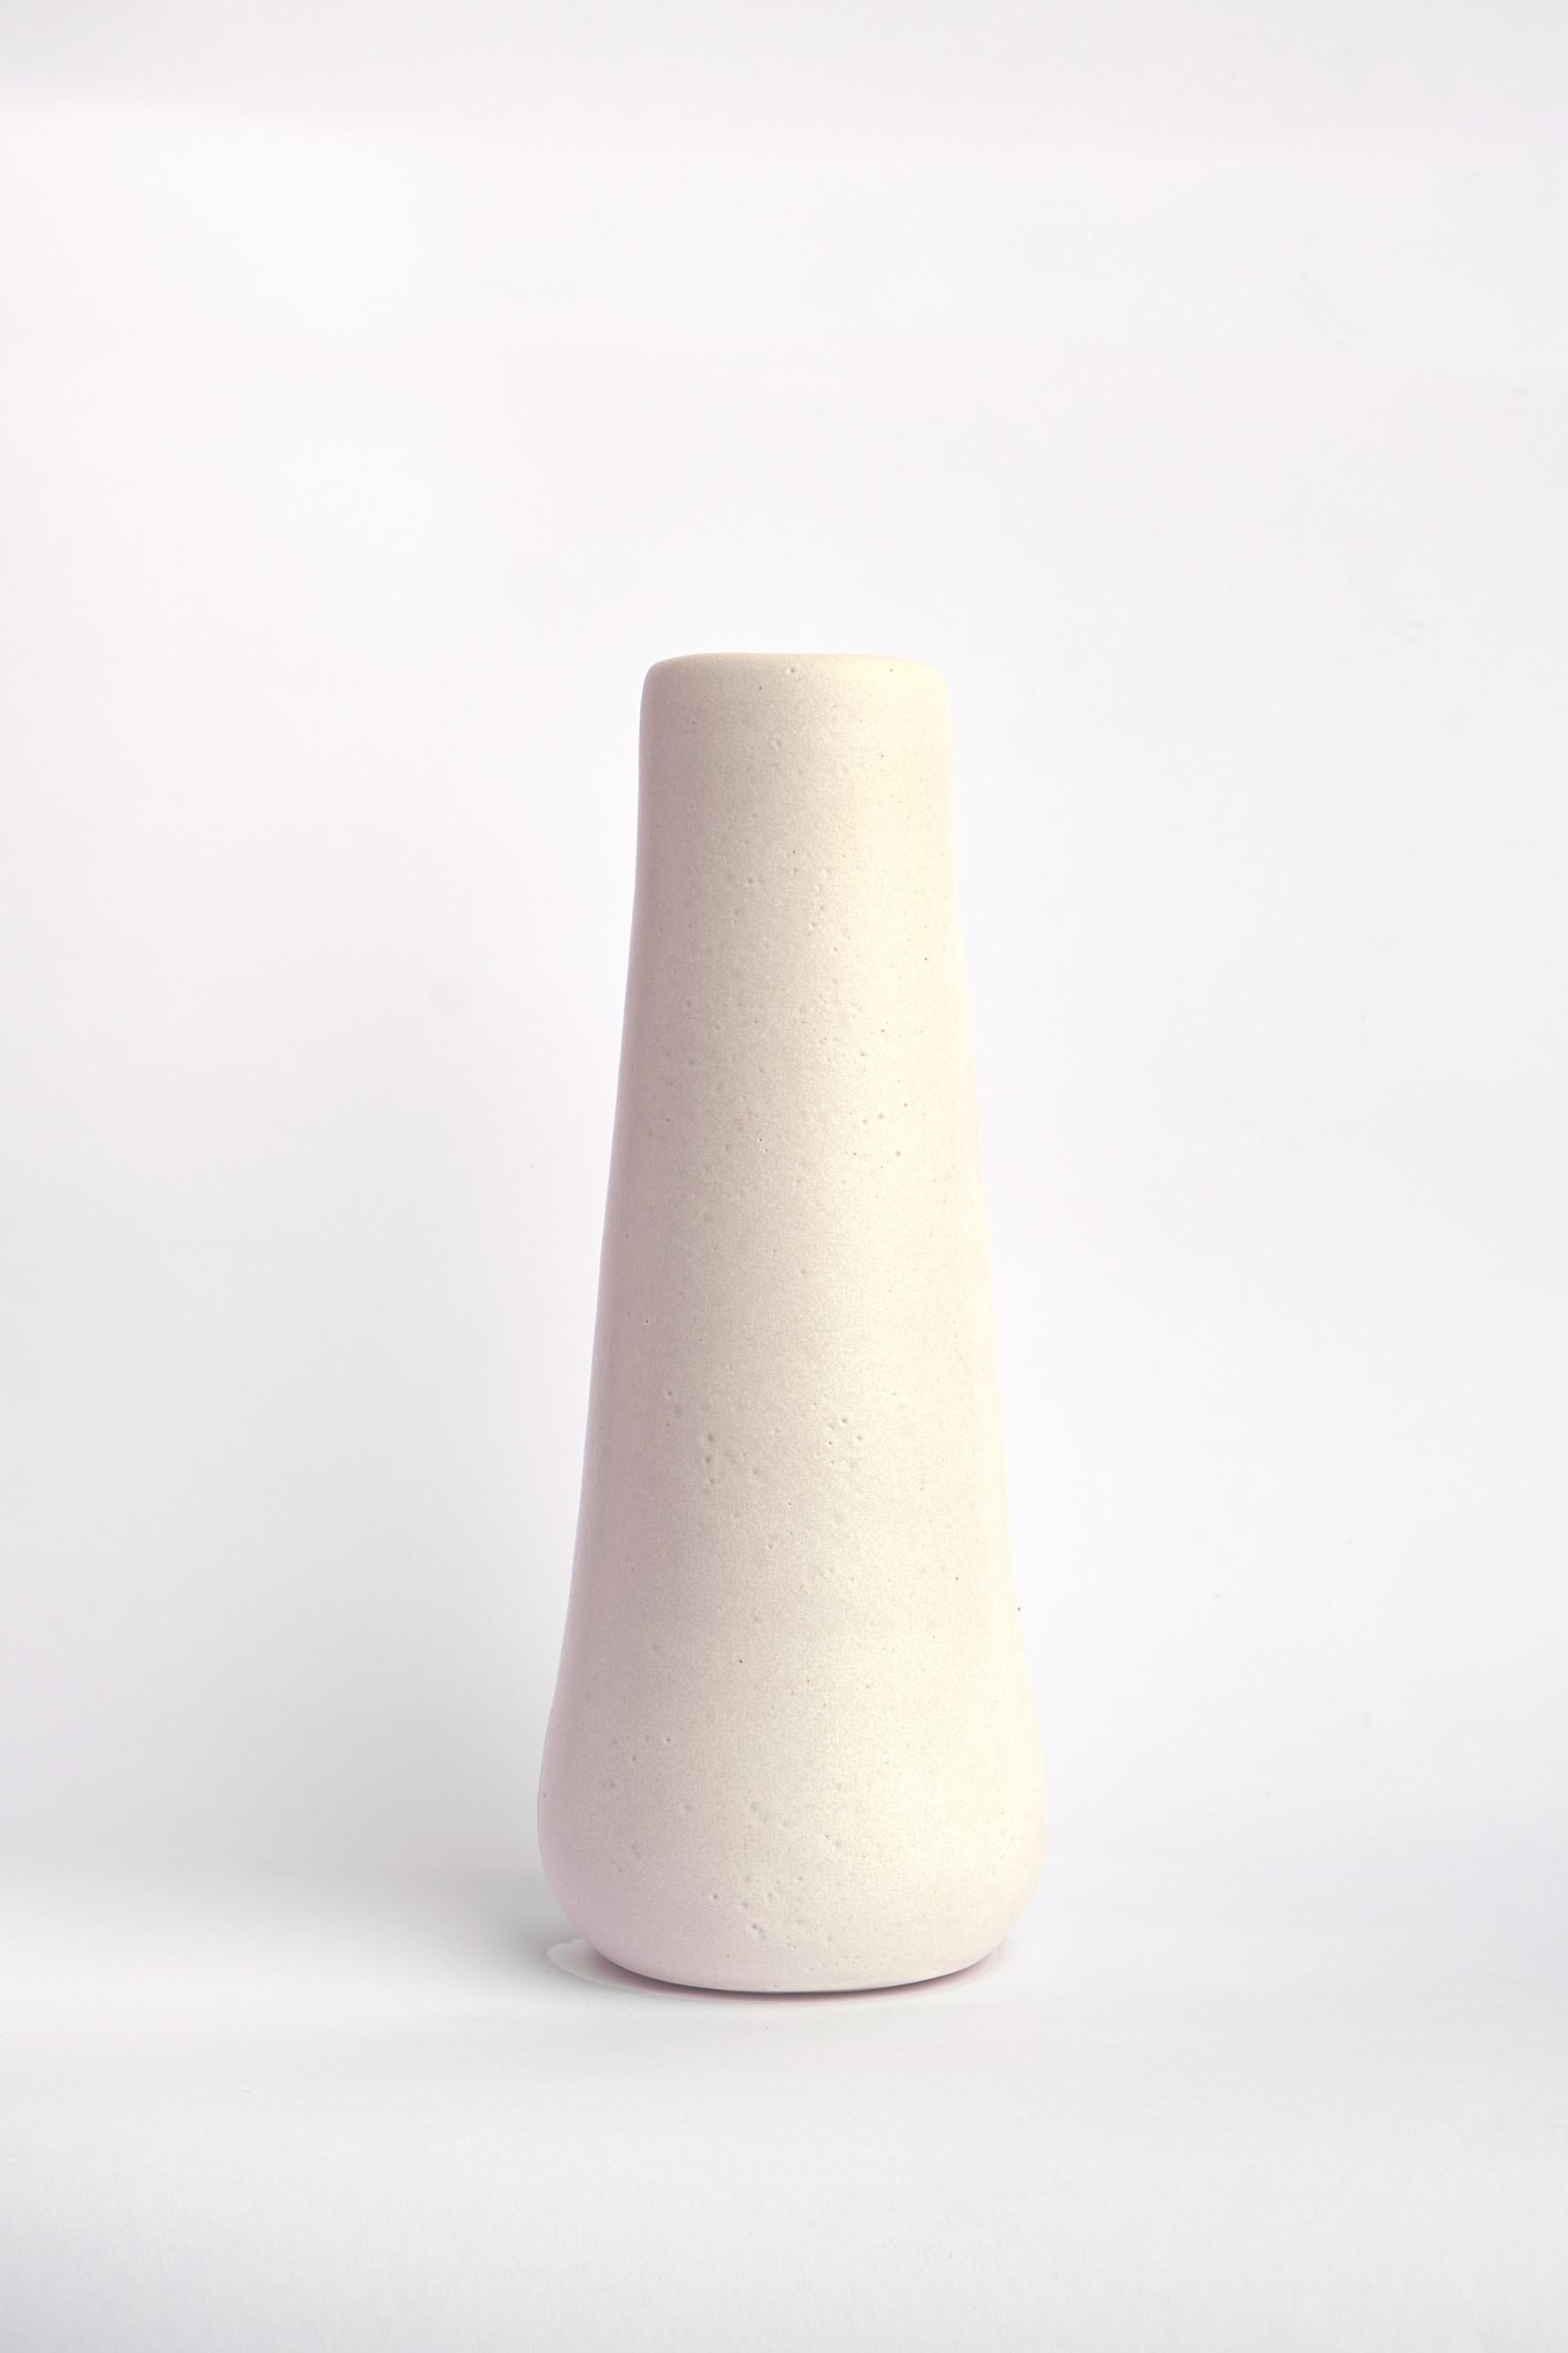 Vase Solitario II von Camila Apaez
MATERIALIEN: Keramik
Abmessungen: 10 x H 25 cm
Optionen: White Bone, Chocolate, Charcoal black, Natural, Barro tostado.

Weitere Bilder sind nur Referenzen für andere Farbmöglichkeiten: White bone, Chocolate,